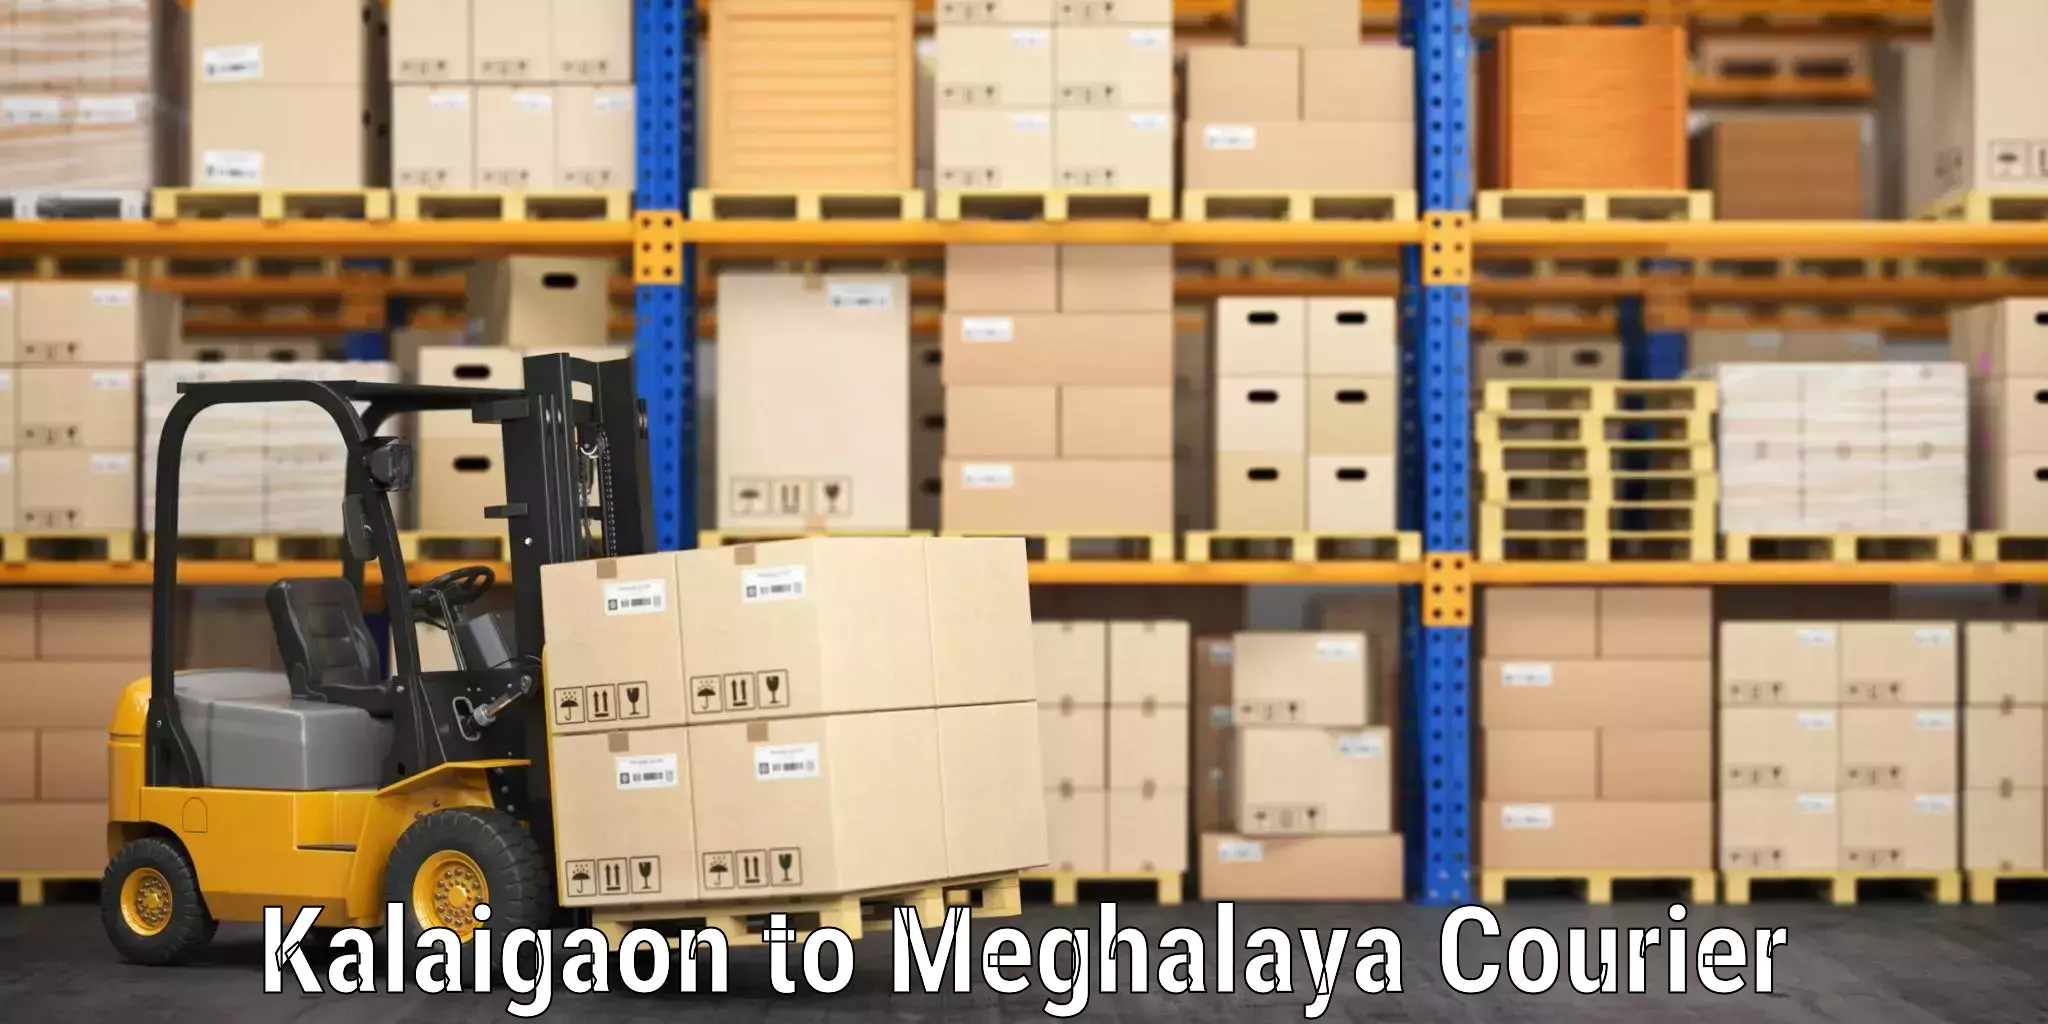 Baggage shipping optimization Kalaigaon to Meghalaya